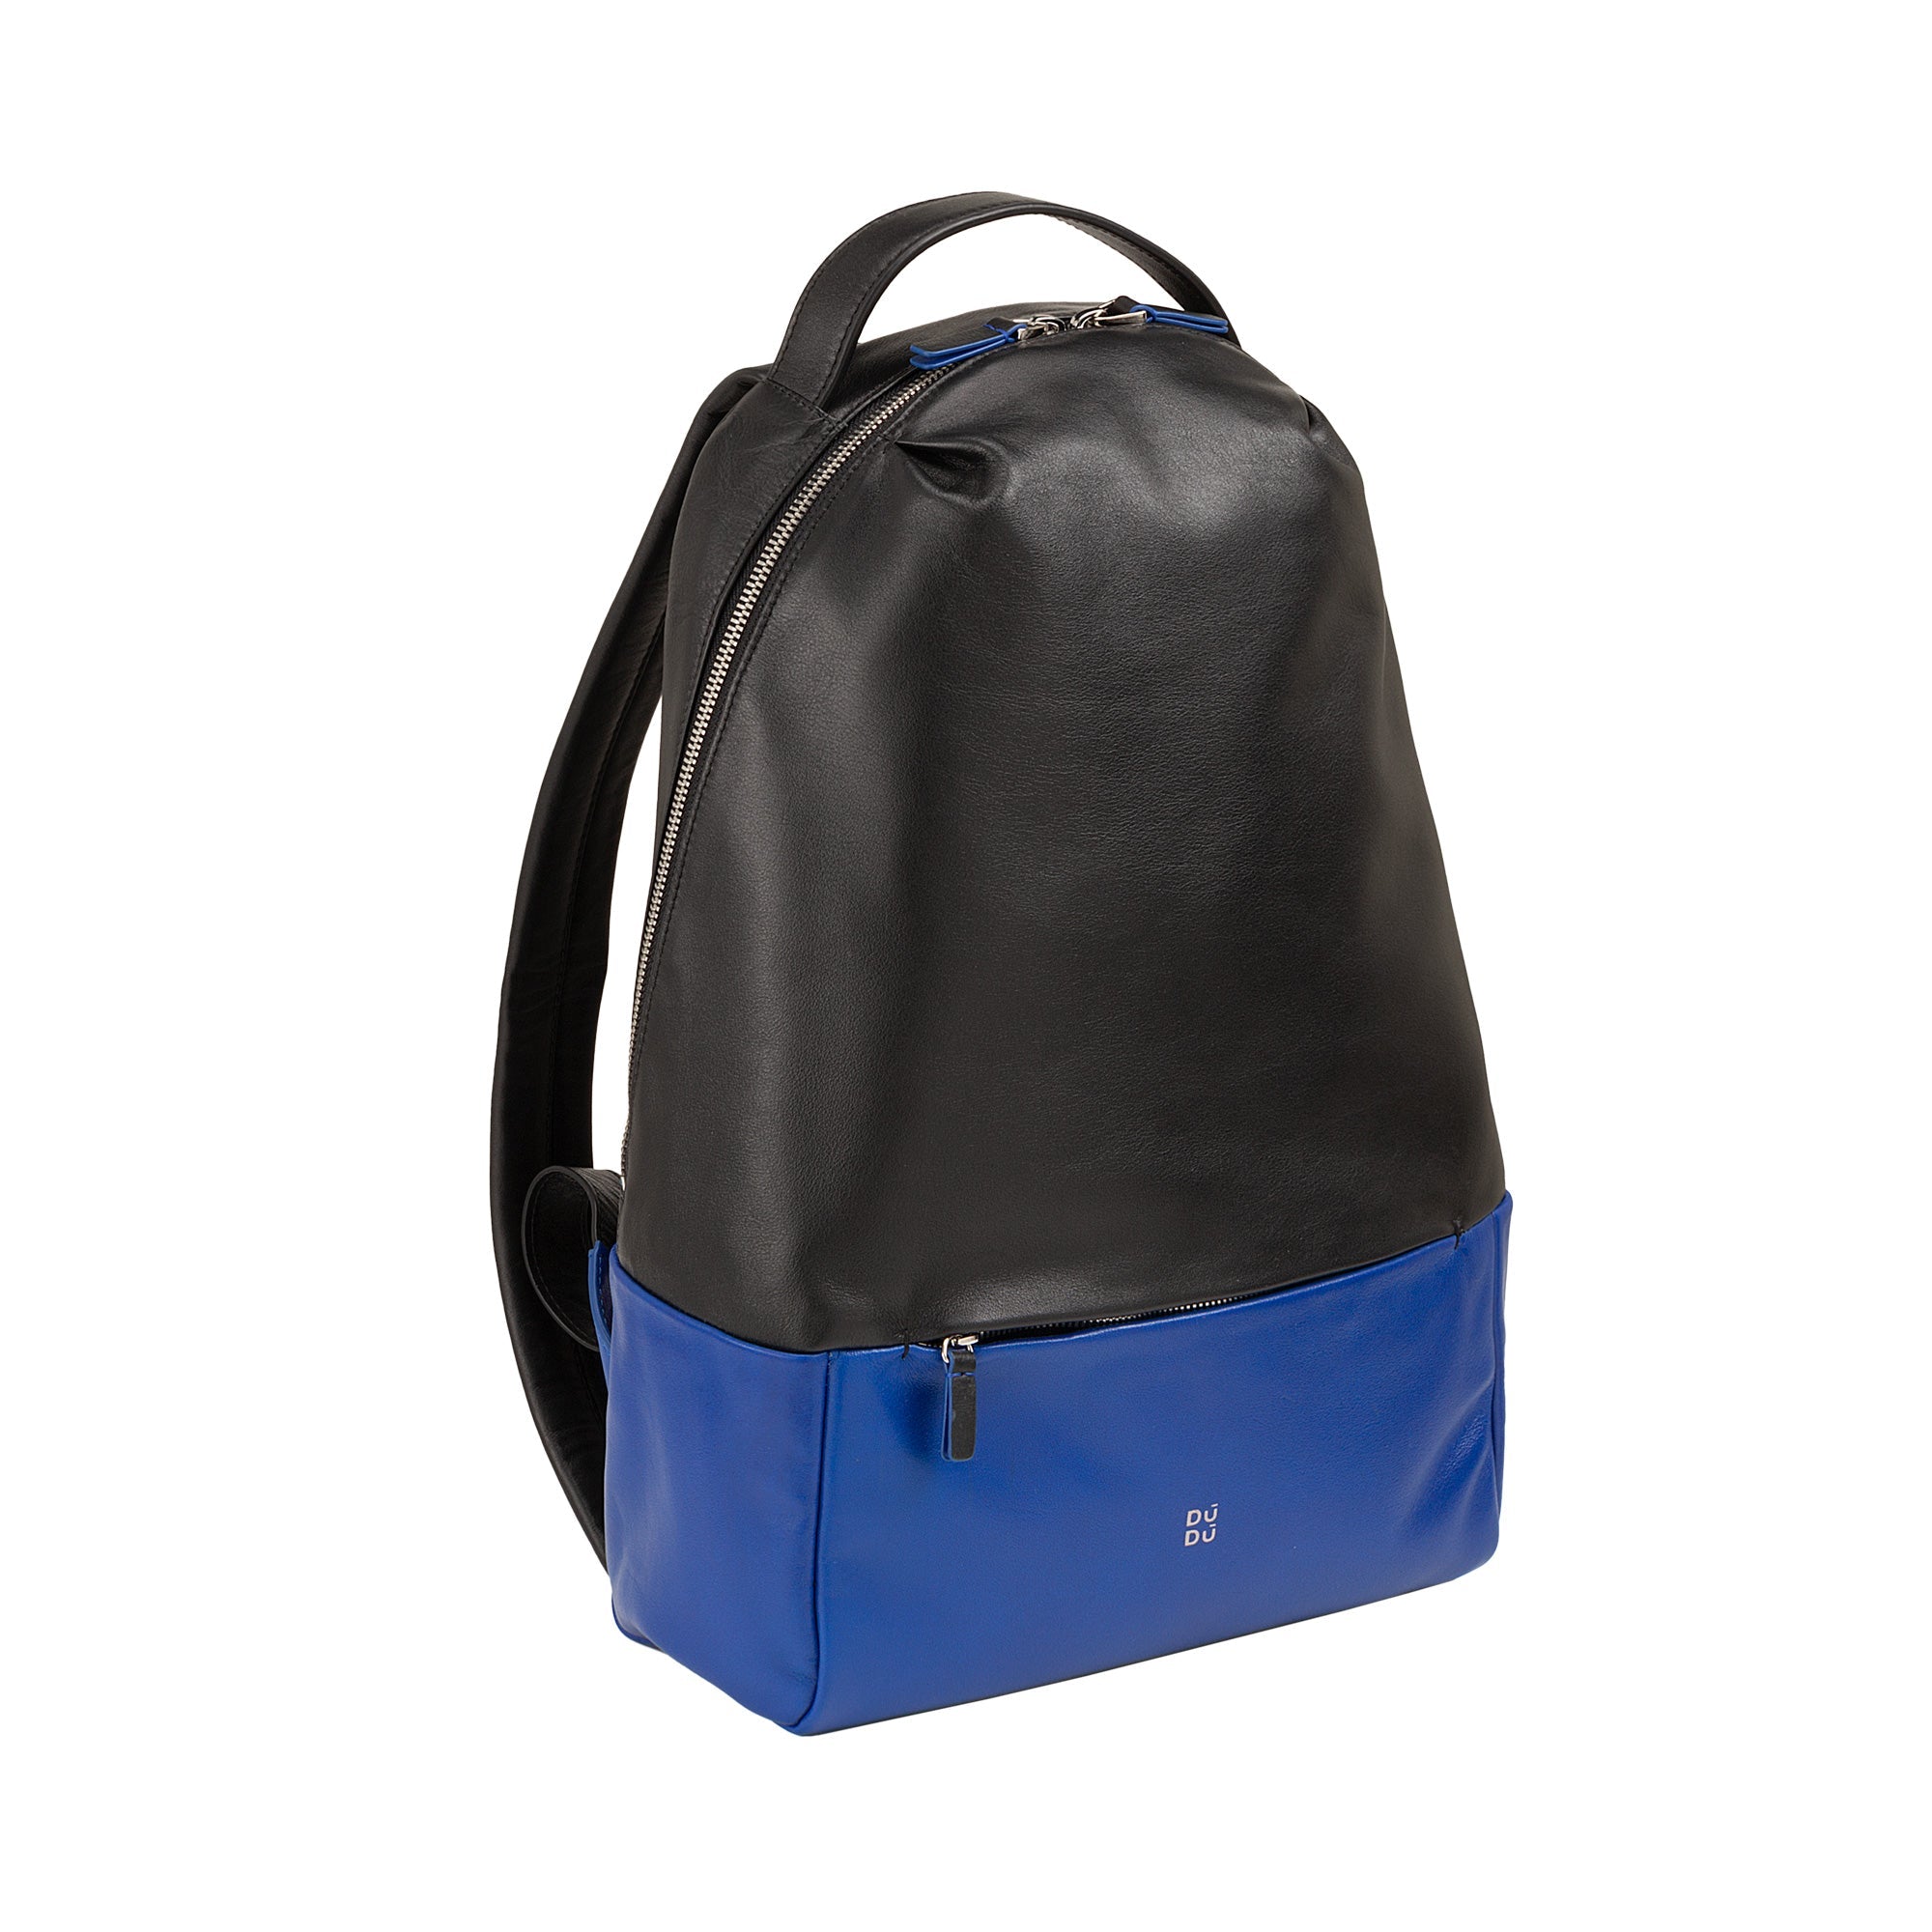 DuDu庐 RIO Multicolour Leather Backpack - Fuchsia